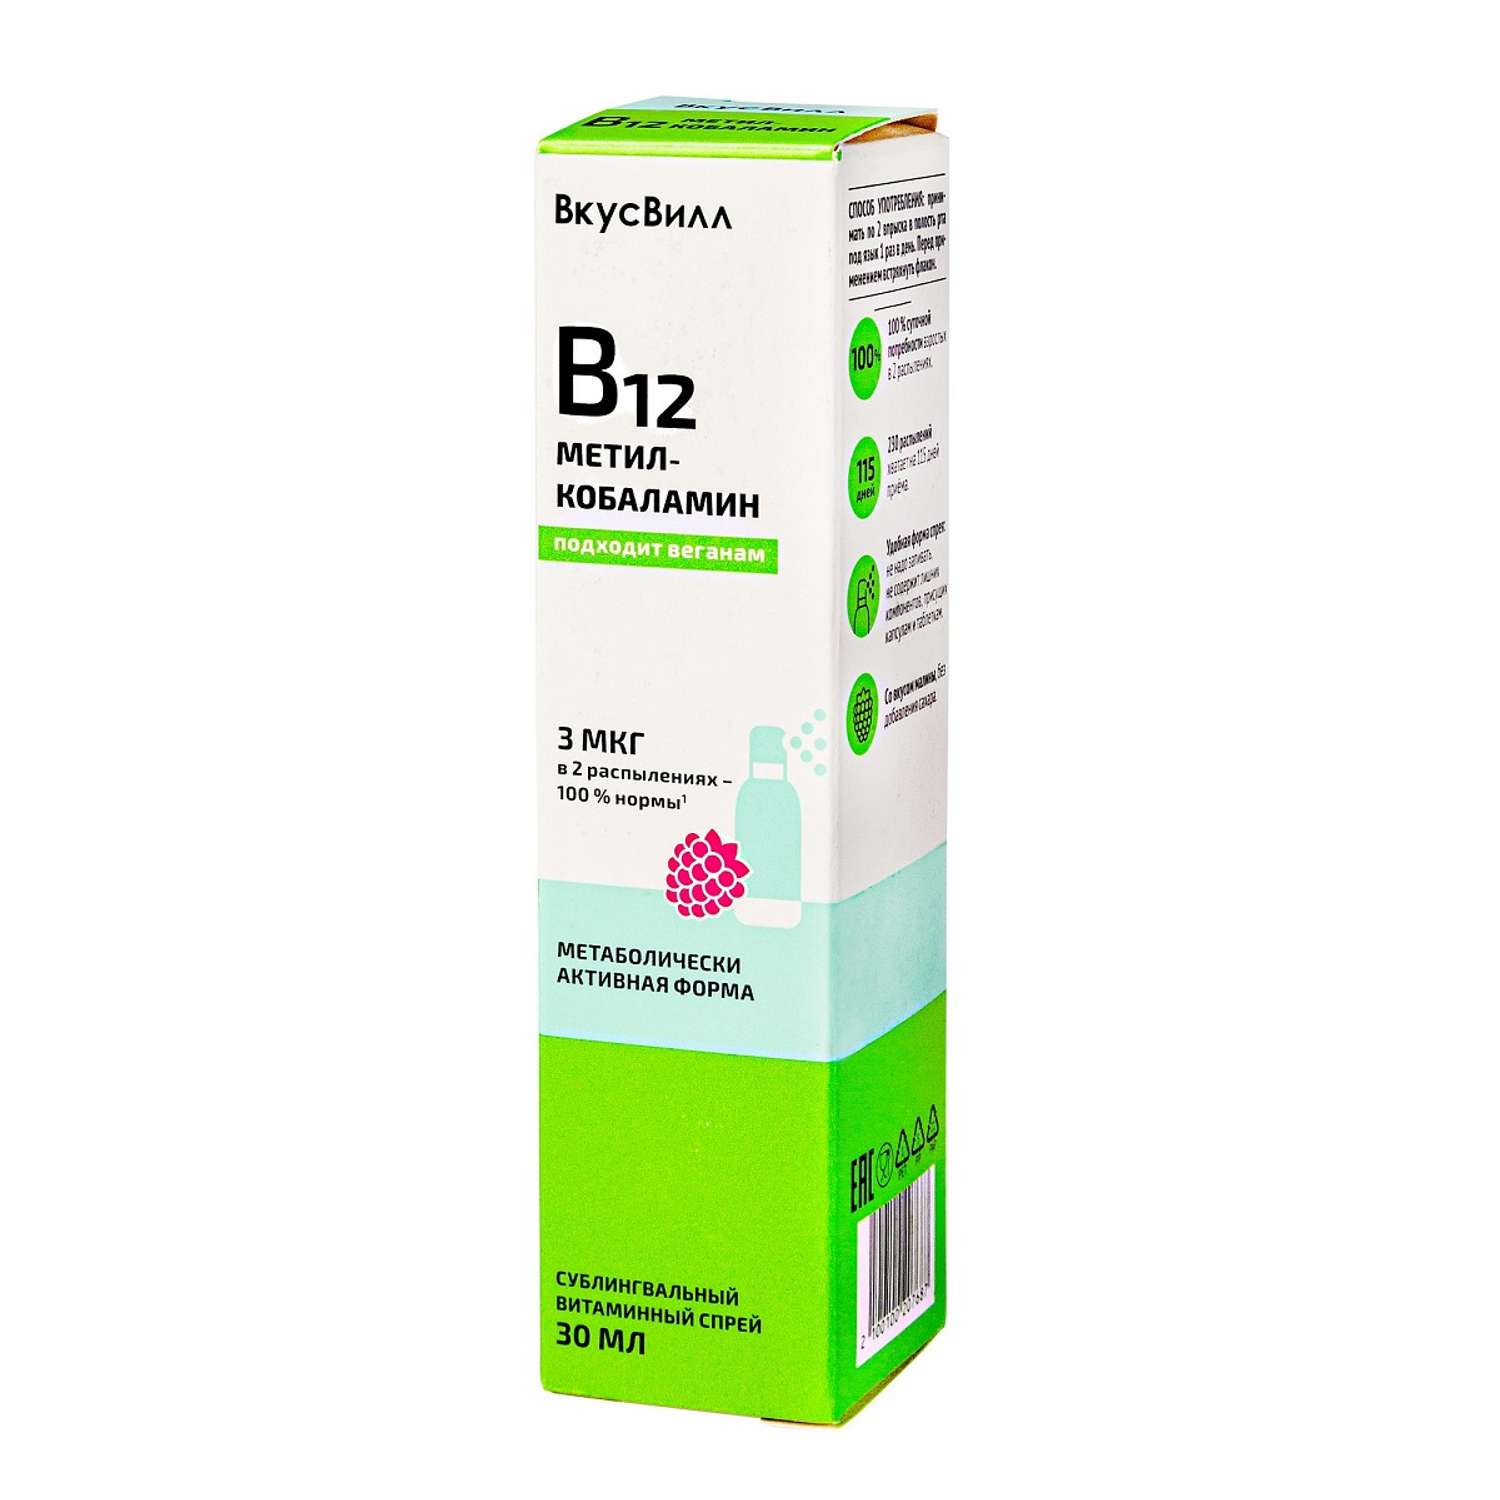 Витамин B12 ВкусВилл метилкобаламин спрей 30 мл - фото 1